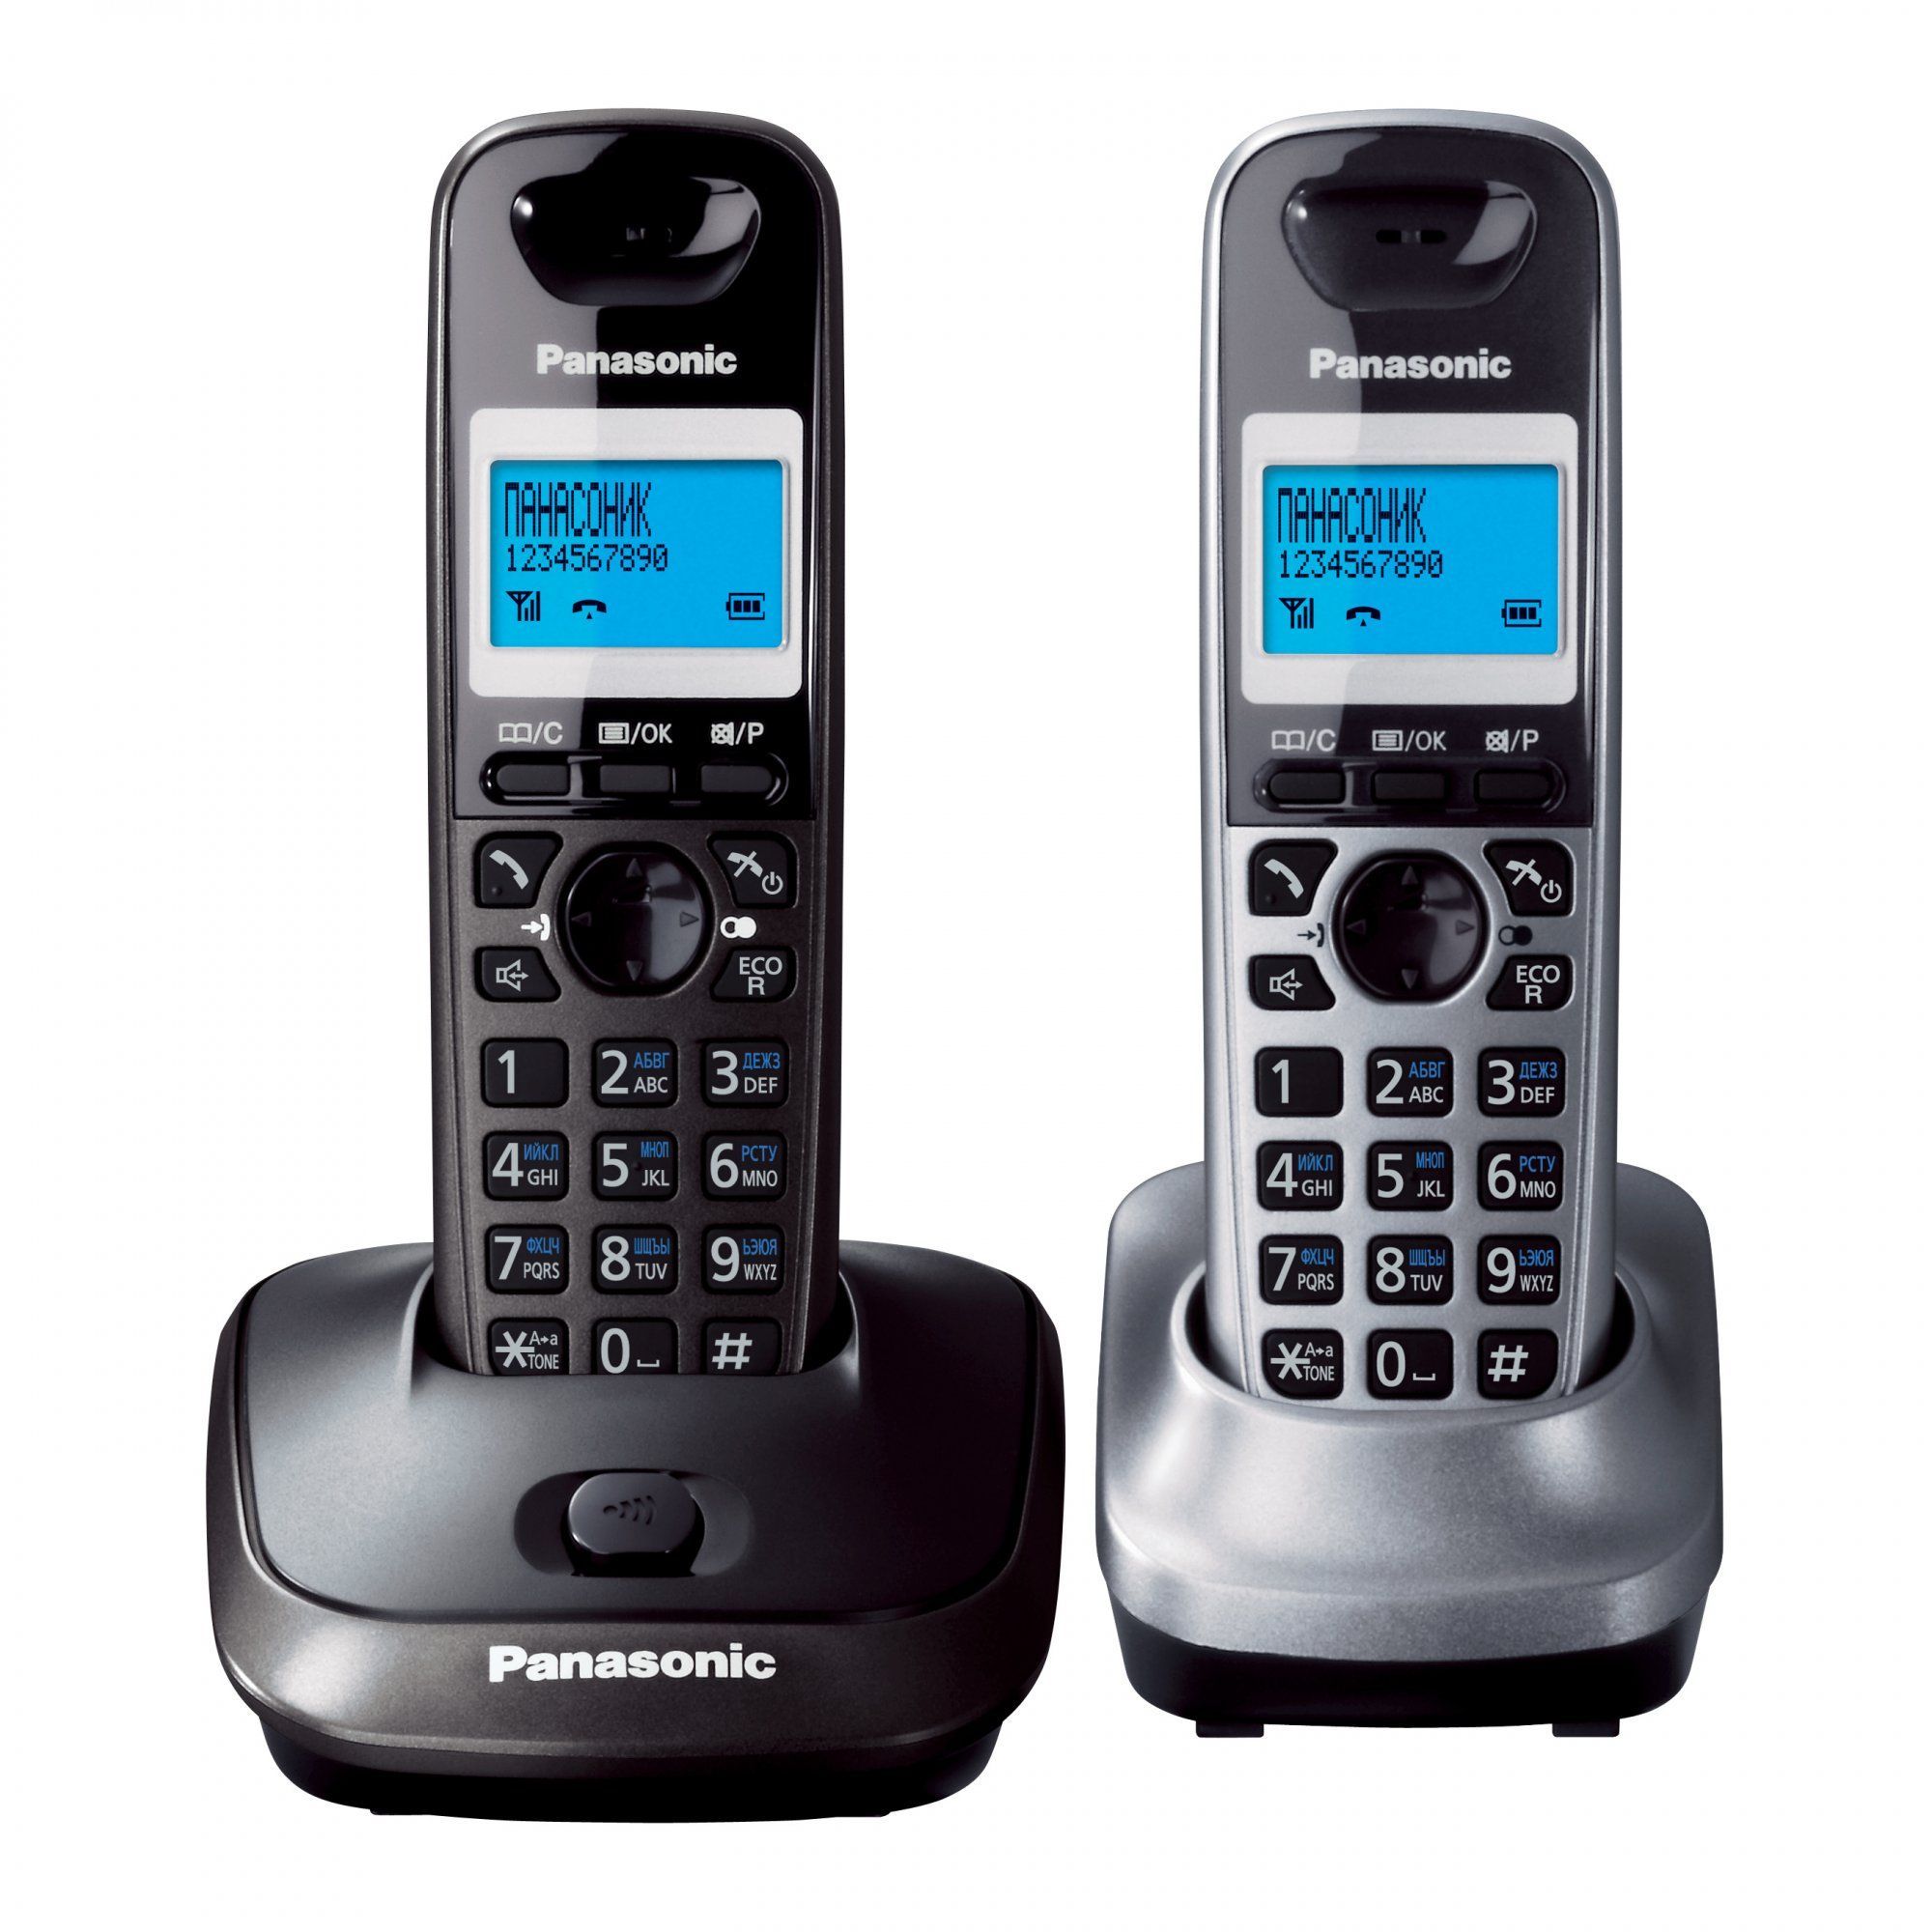 Беспроводной телефон DECT Panasonic KX-TG2512RU2